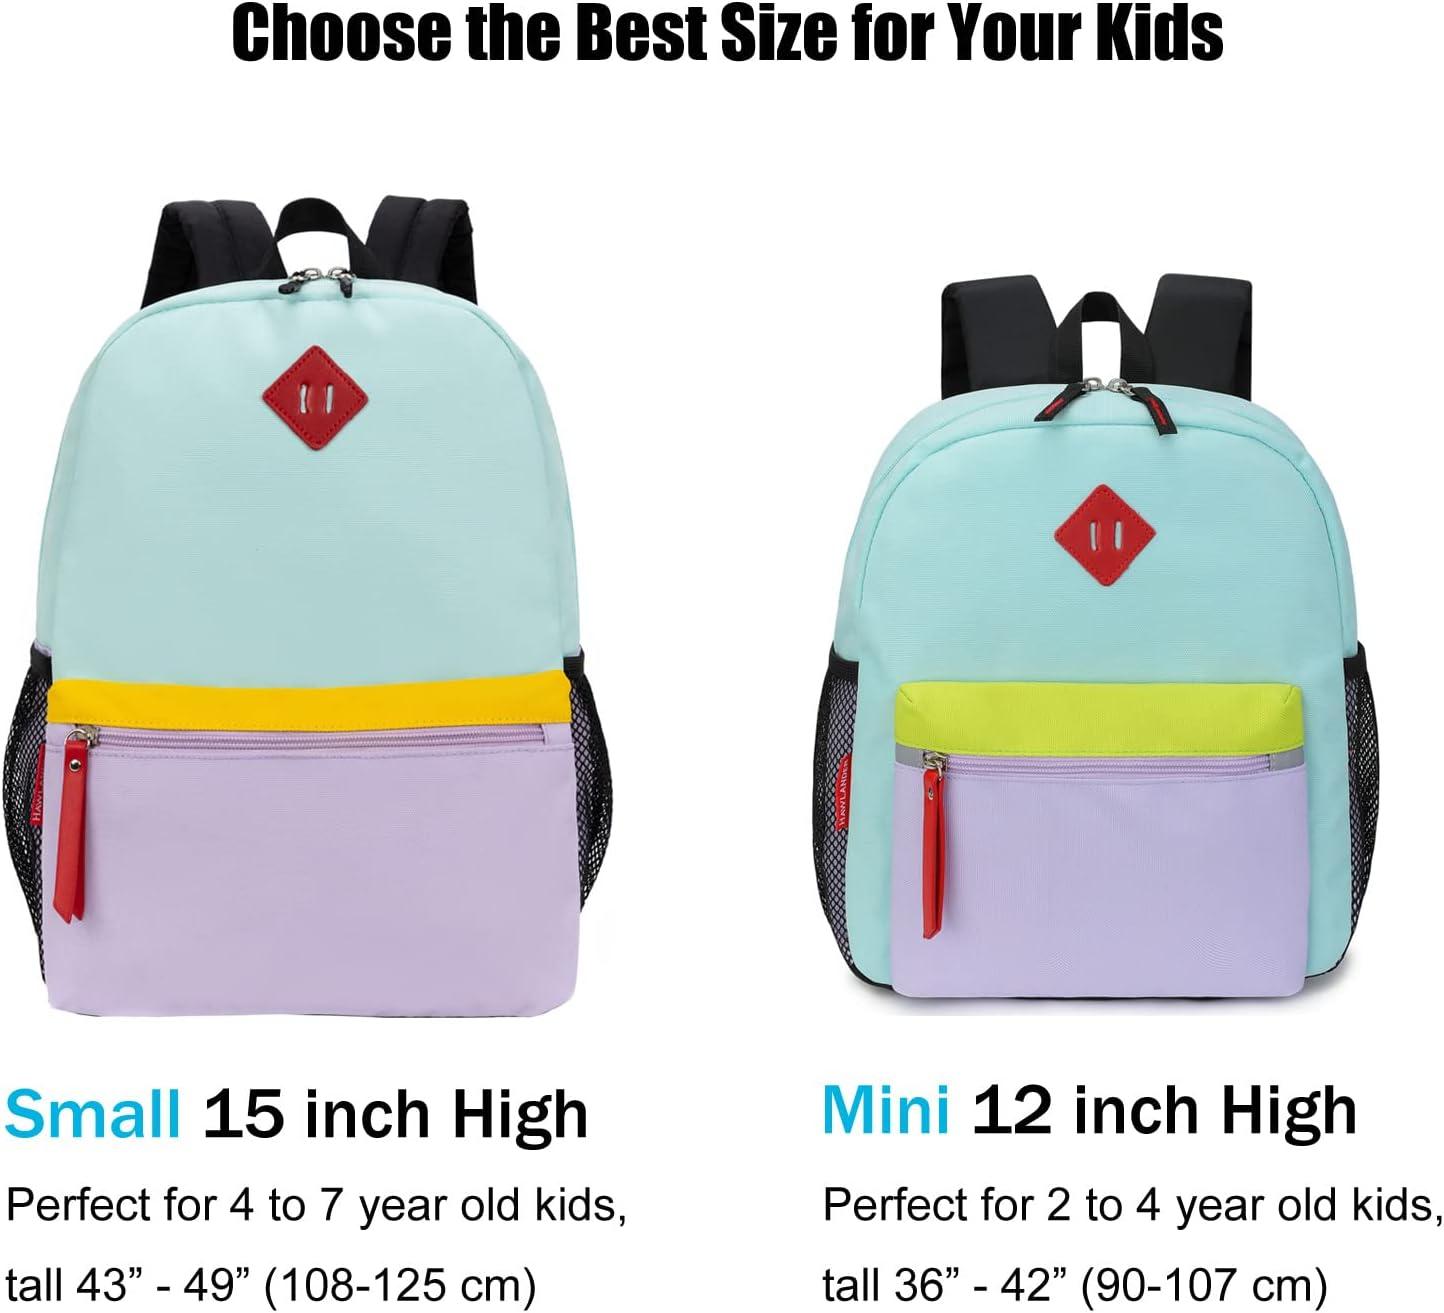 HawLander Little Kids Backpack for Boys Toddler School Bag Fits 3